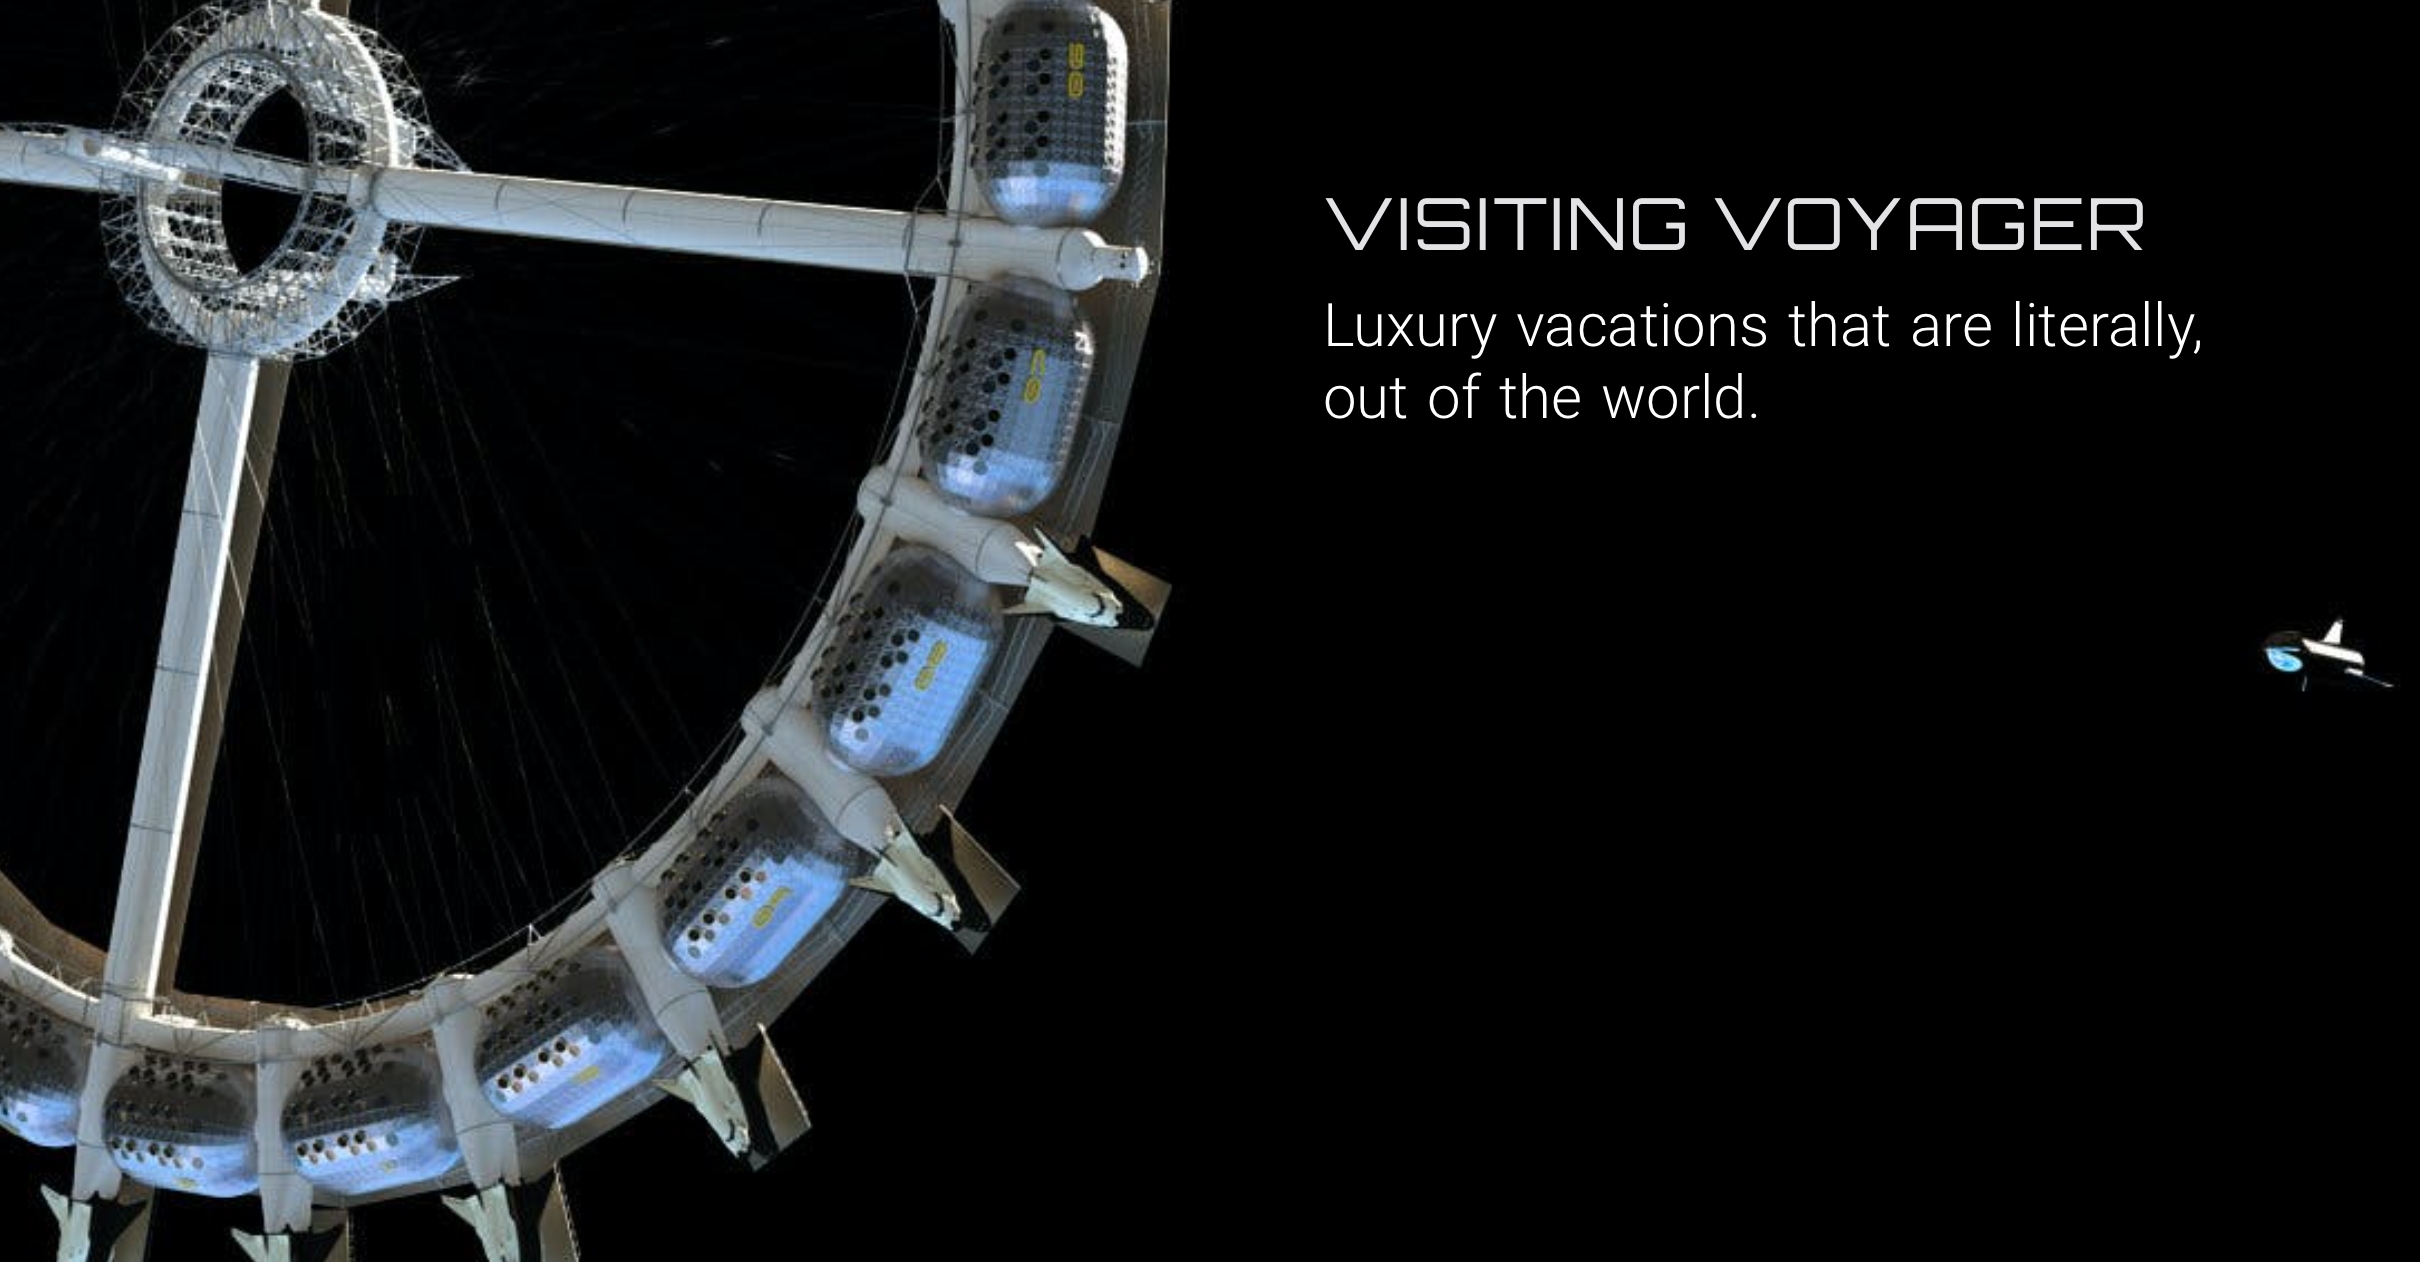 voyager-station-primer-hotel-espacial-de-lujo-1-alt